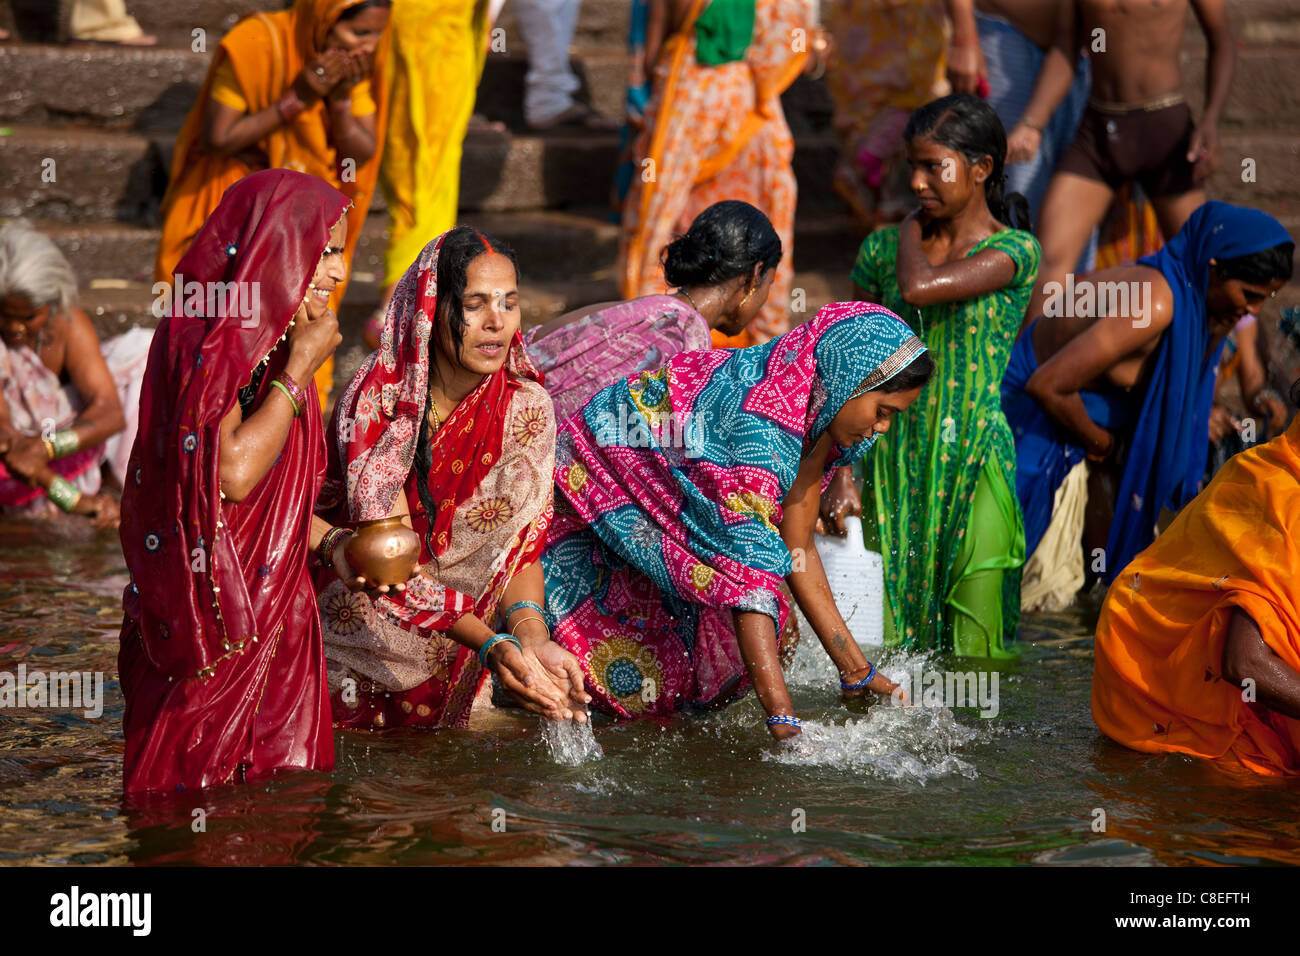 Indisch Hinduistischen Pilger Baden In Der Ganges Fluss Am Dashashwamedh Ghat In Der Heiligen 